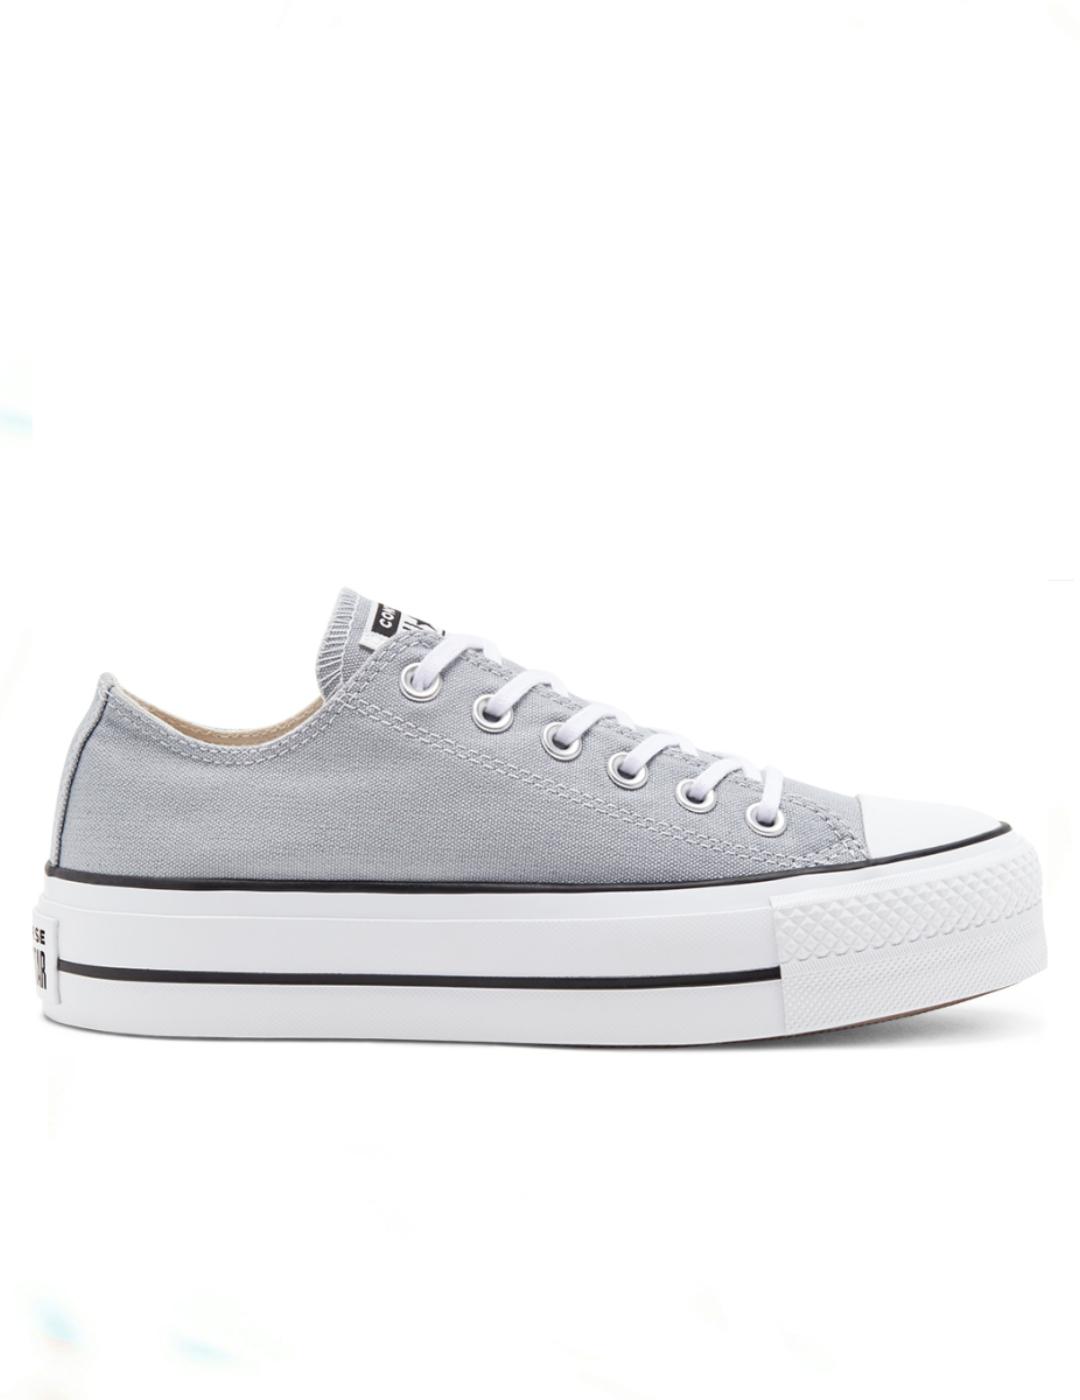 converse grises doble suela - Tienda Online de Zapatos, Ropa y Complementos  de marca